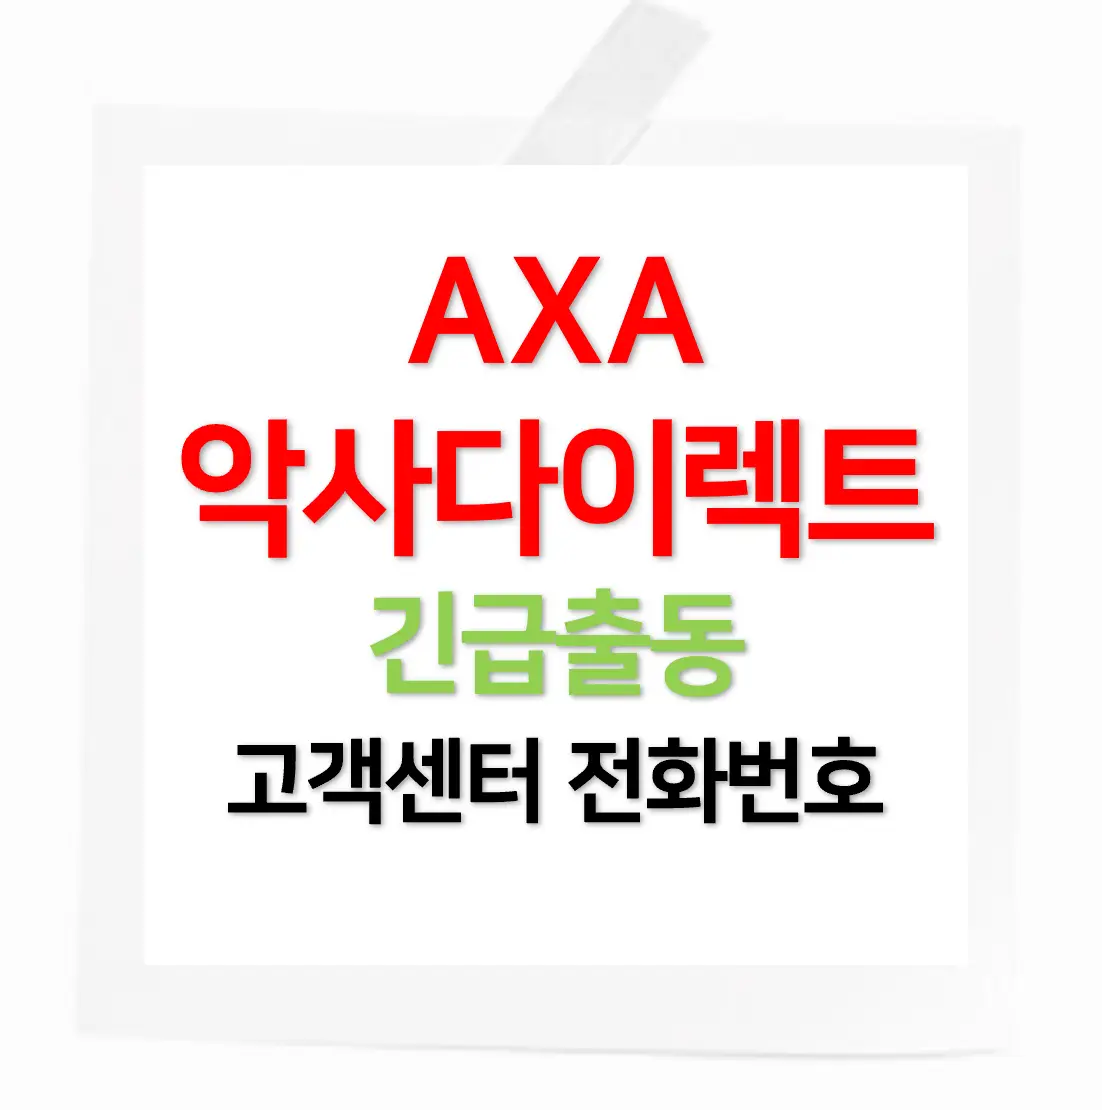 AXA 다이렉트 제목